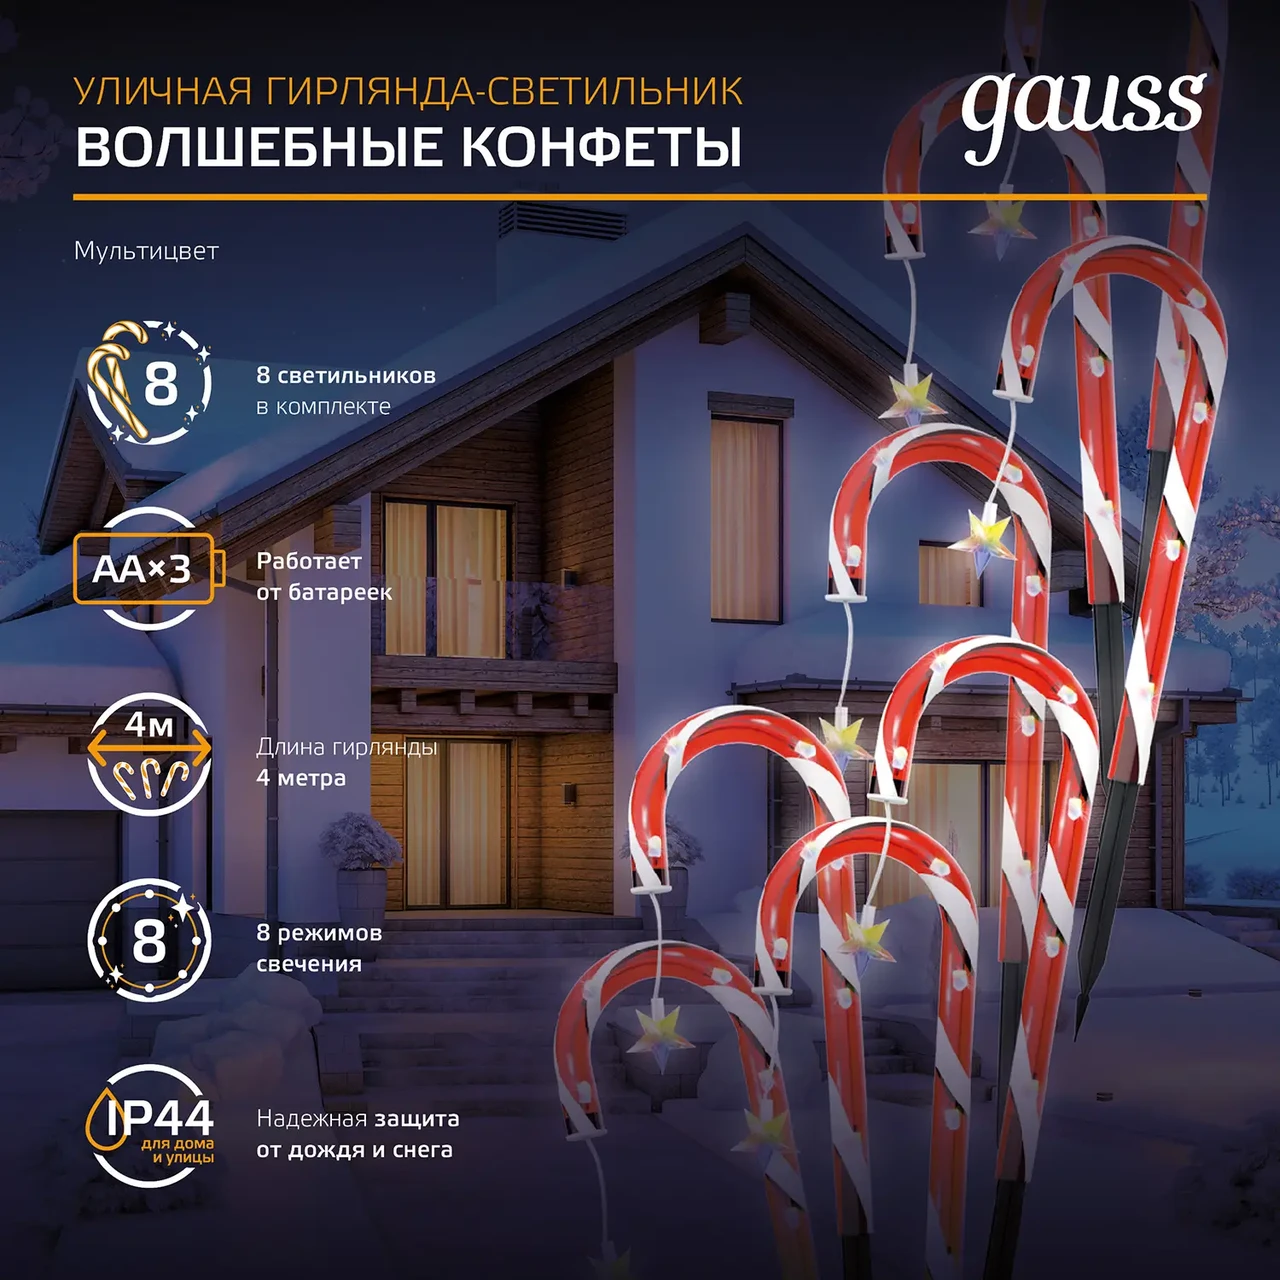 Светильник новогодний Gauss Holiday " Волшебные конфеты", IP44 мультицвет LED 1/8, фото 1